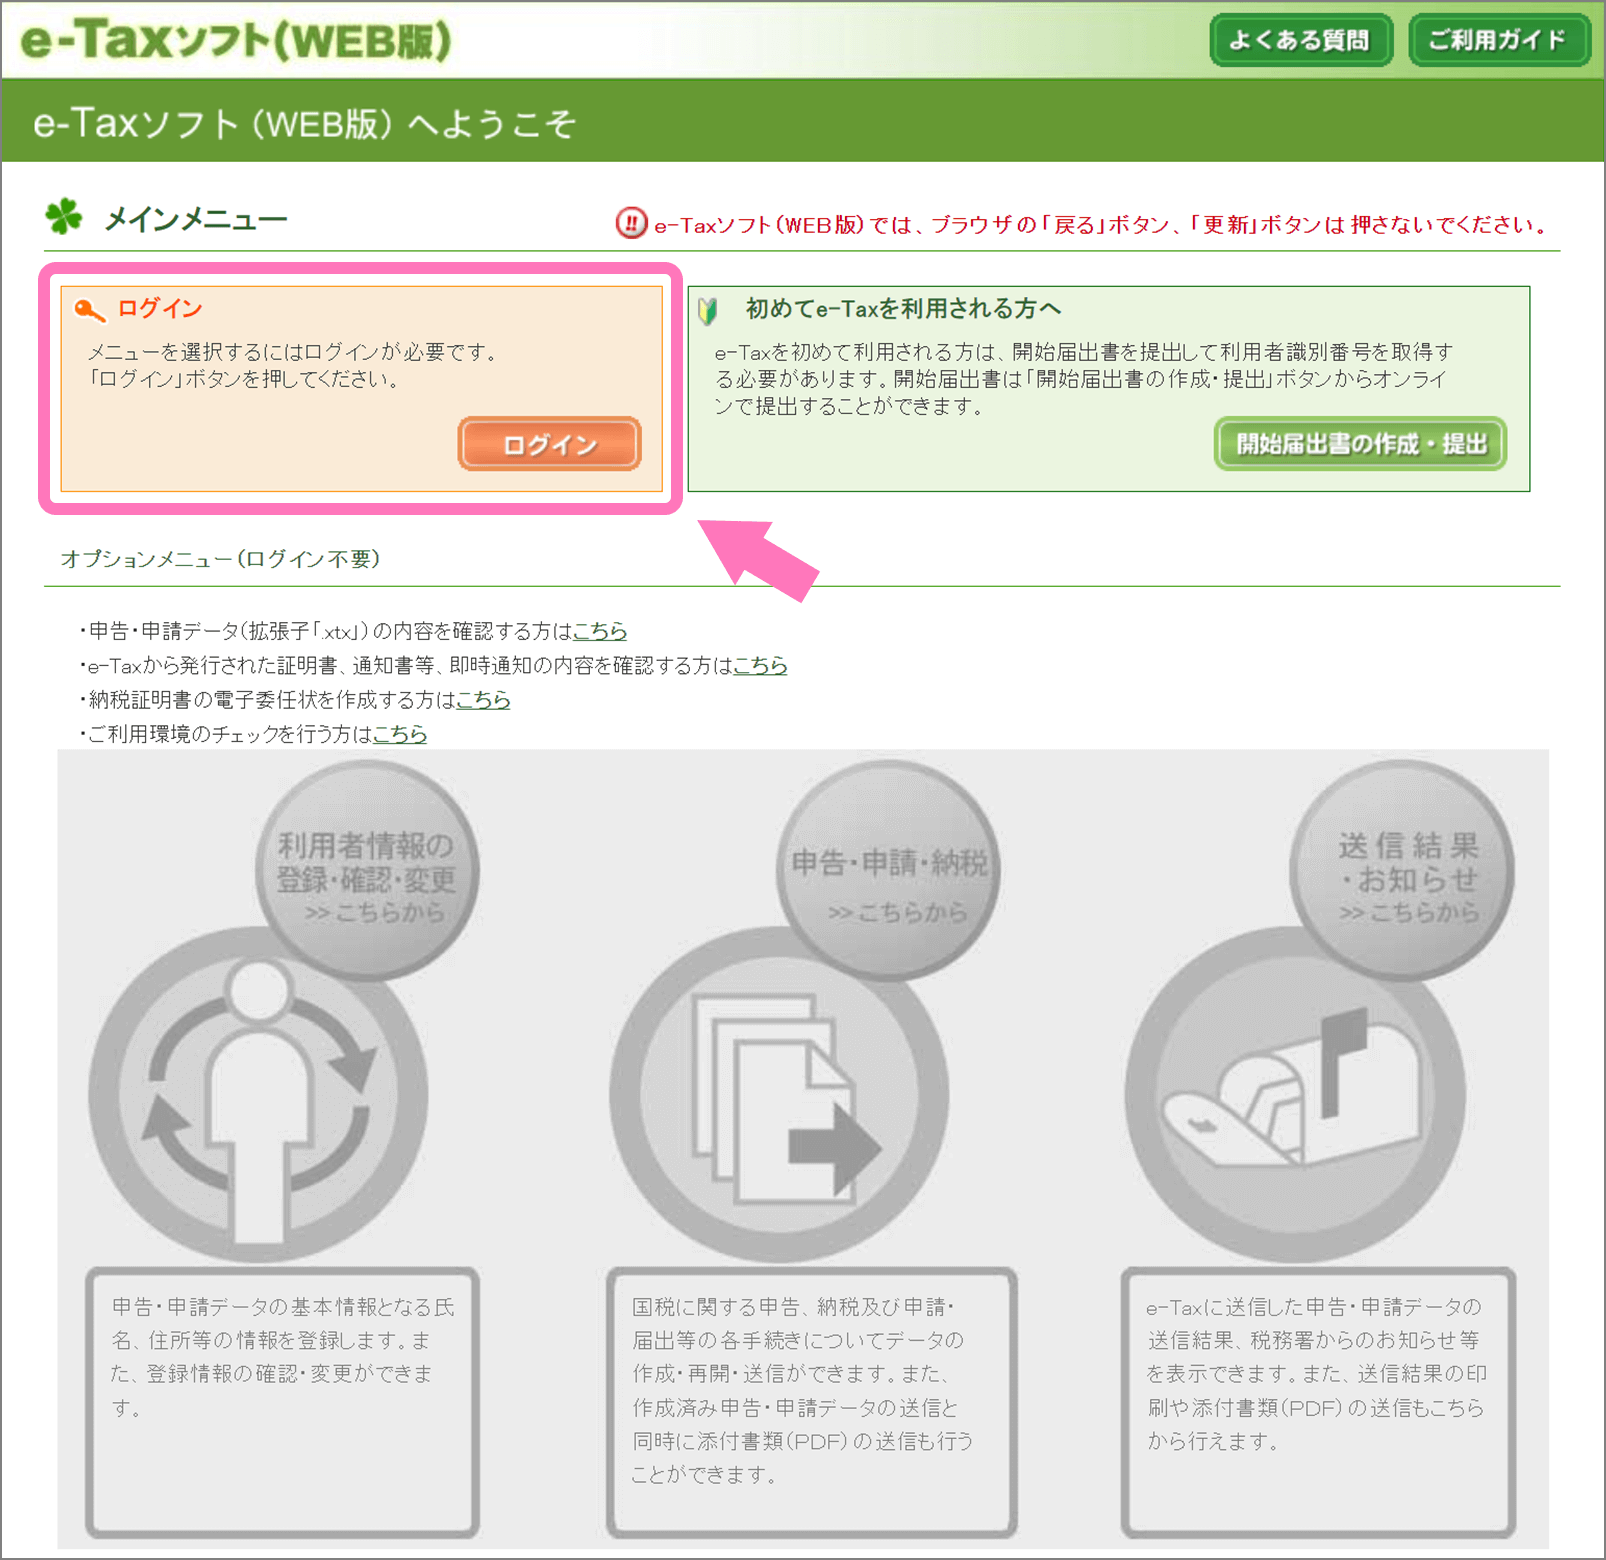 e-Tax WEB 版にアクセスしてログイン